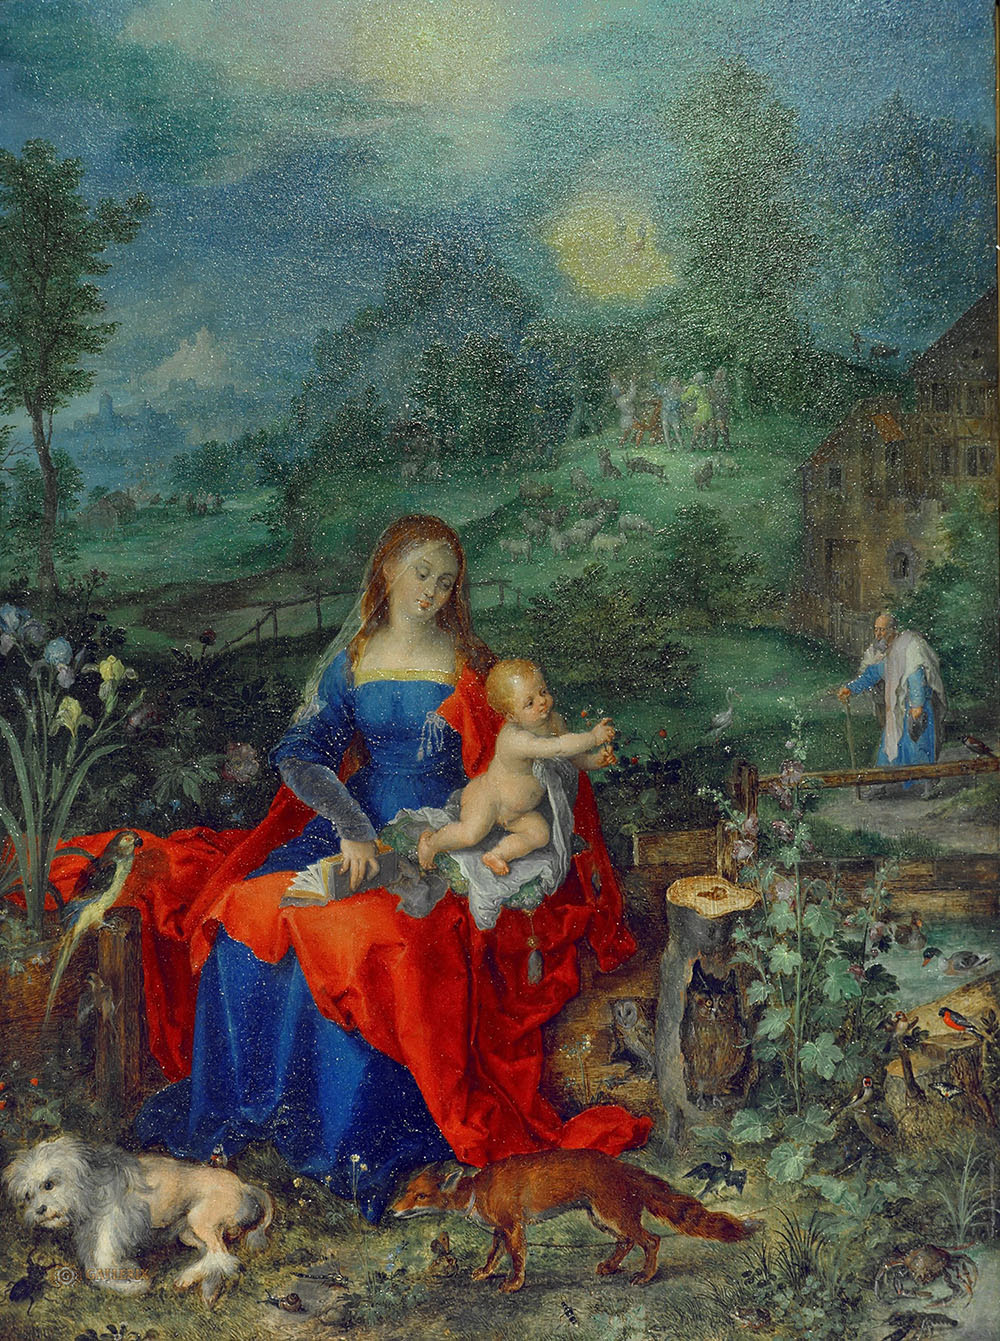 Ян Брейгель Старший. "Мадонна с Младенцем среди животных". 1604. Галерея Дориа-Памфили, Рим.